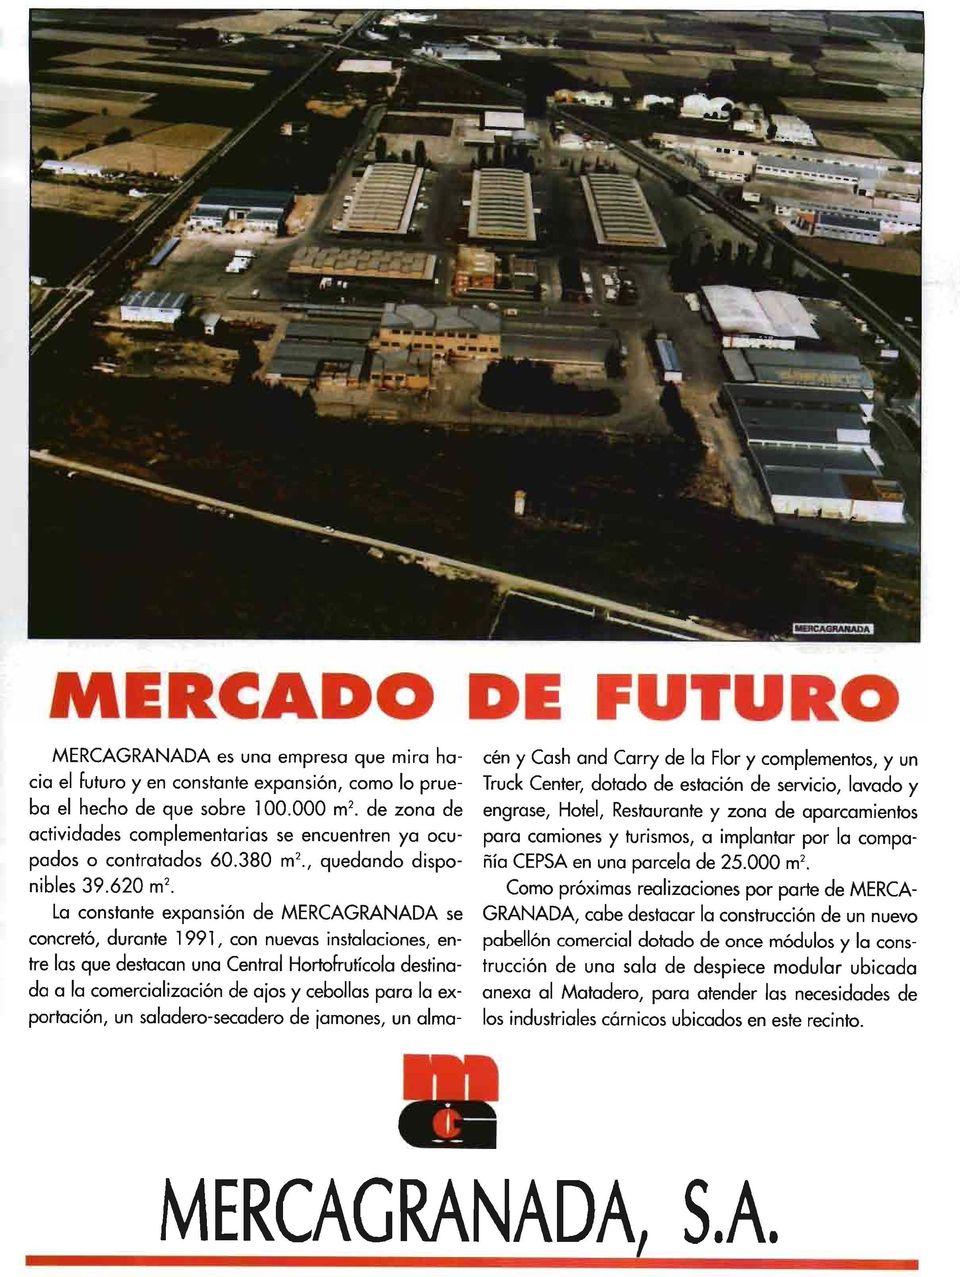 La constante expansión de MERCAGRANADA se concretó, durante 1991, con nuevas instalaciones, entre las que destacan una Central Hortofrutícola destinada a la comercialización de ajos y cebollas para